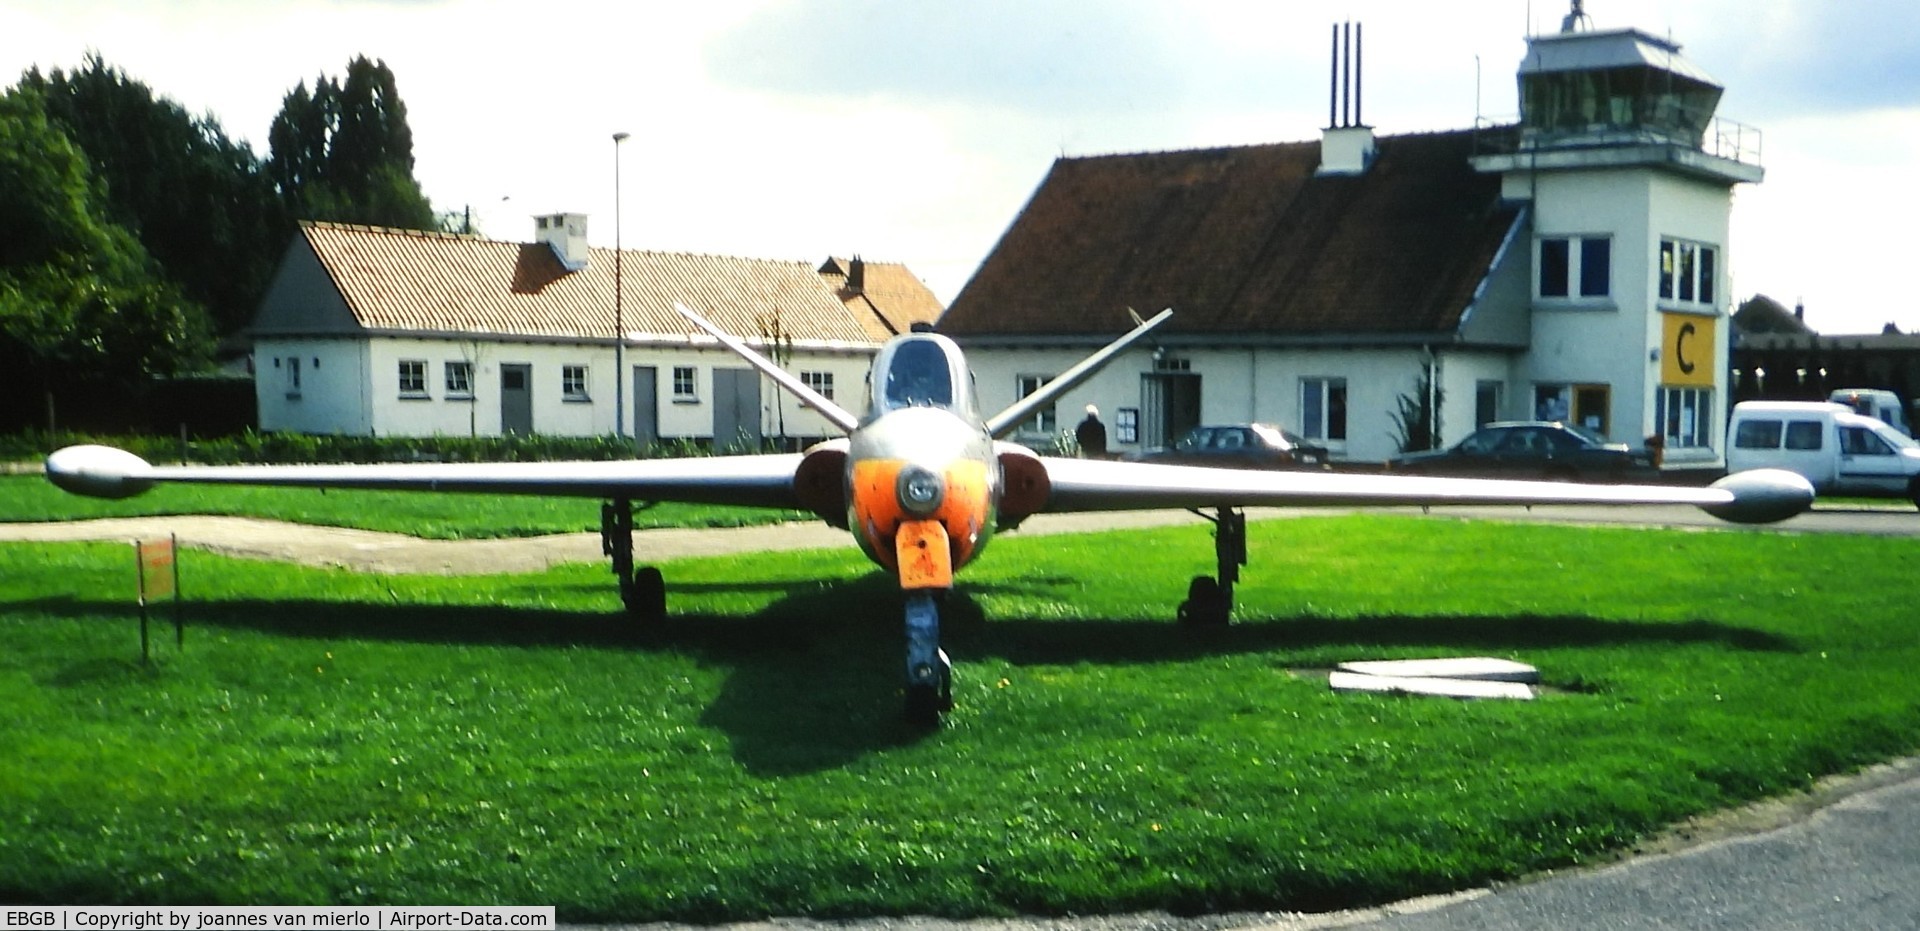 Grimbergen Airfield Airport, Grimbergen Belgium (EBGB) - ex-slide